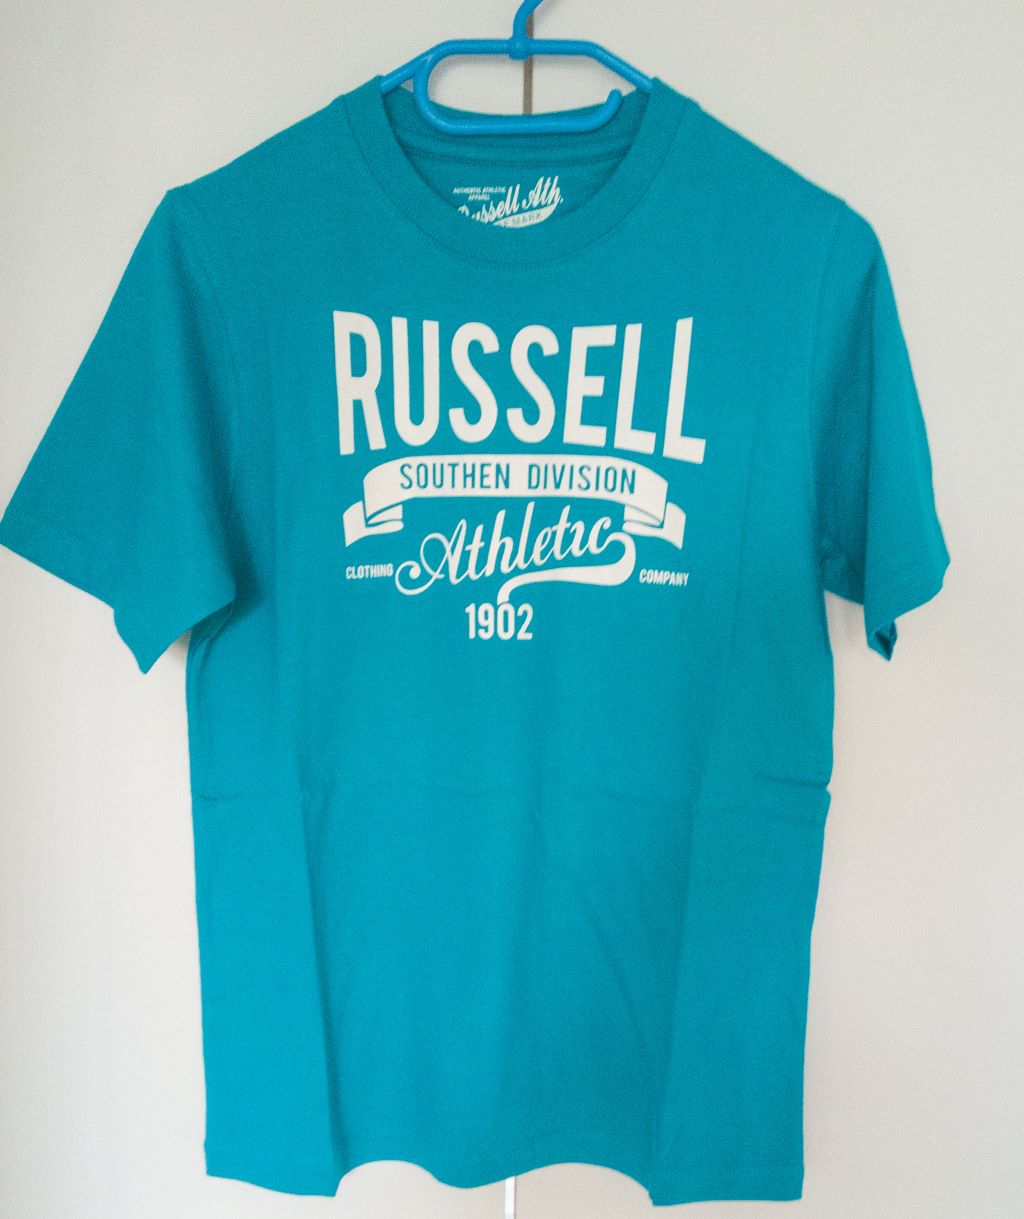 T-shirt młodzieżowy  z nadrukiem na przodzie - Russell Athletic zdjęcie 1